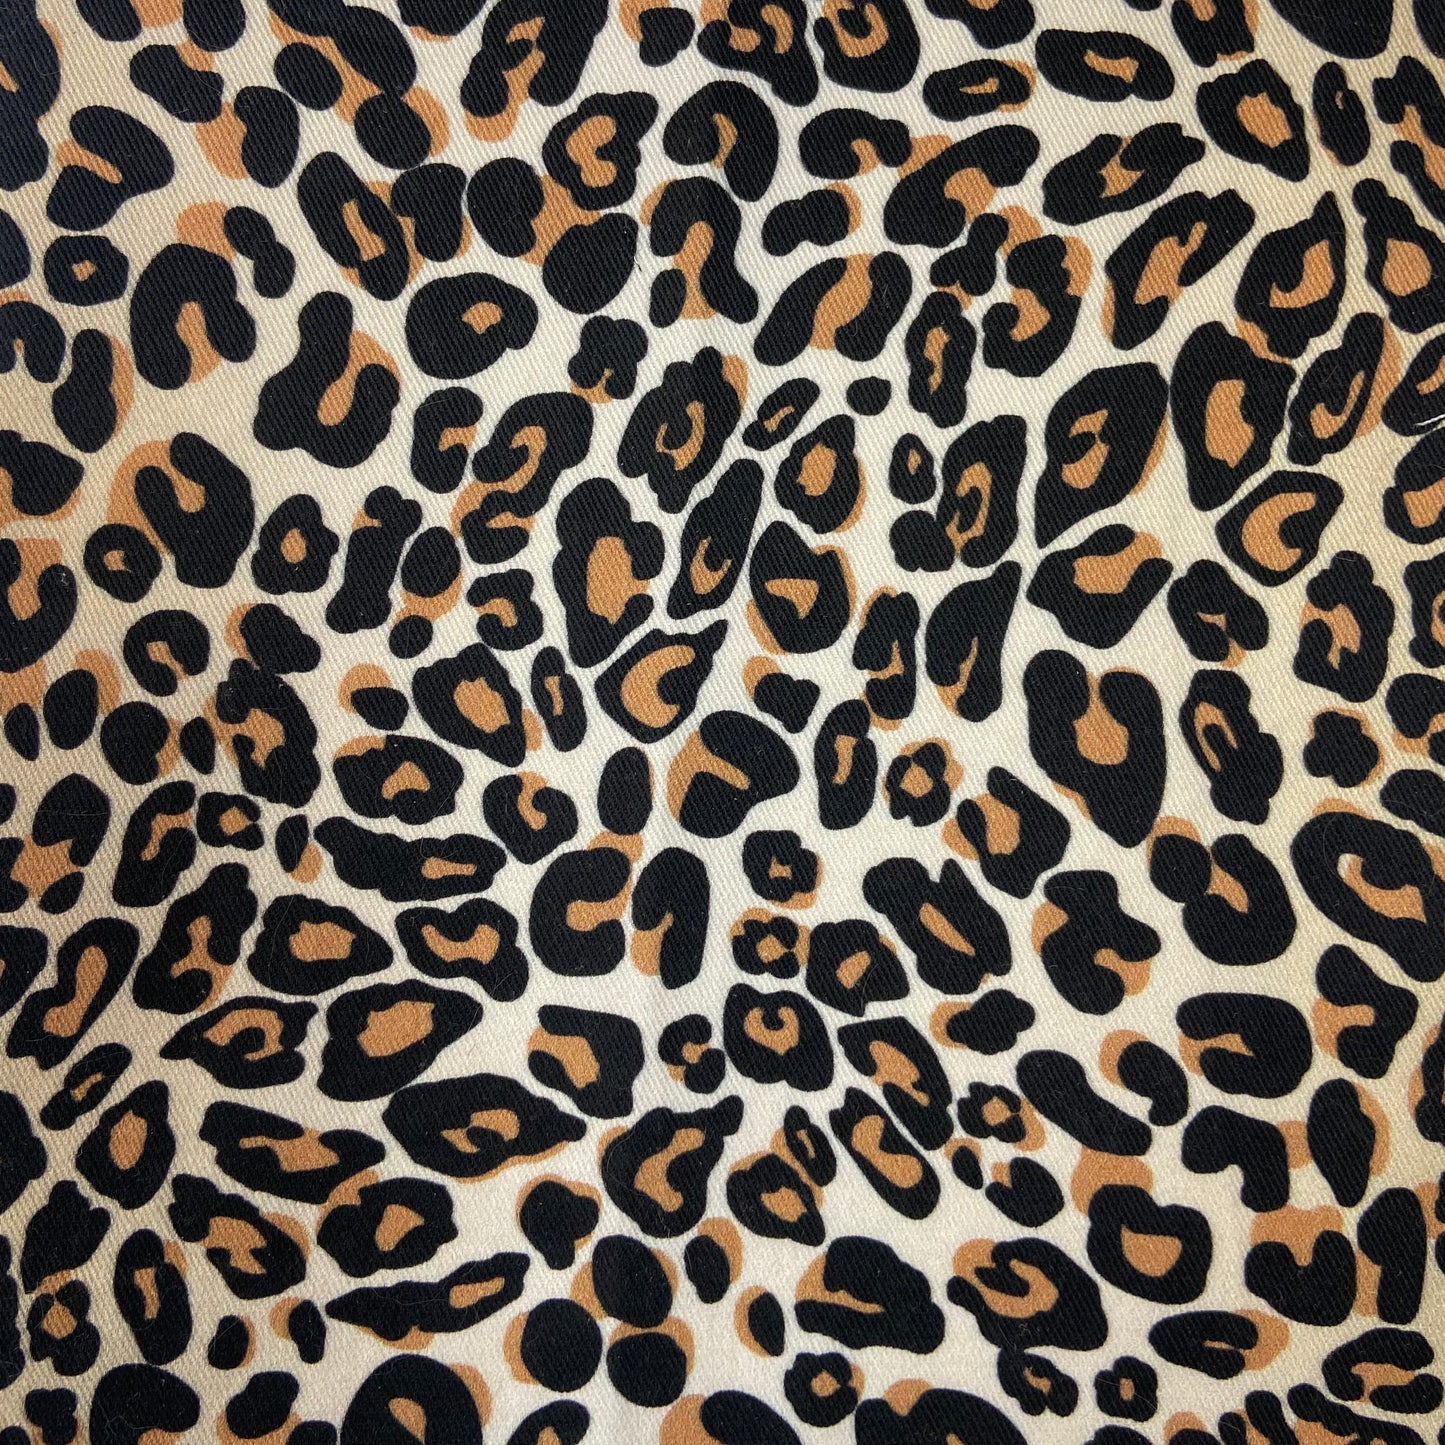 Sergé de coton imprimé motif léopard fausse fourrure tachetée motif tâches noir et marron sur fond beige guépard animal impression 